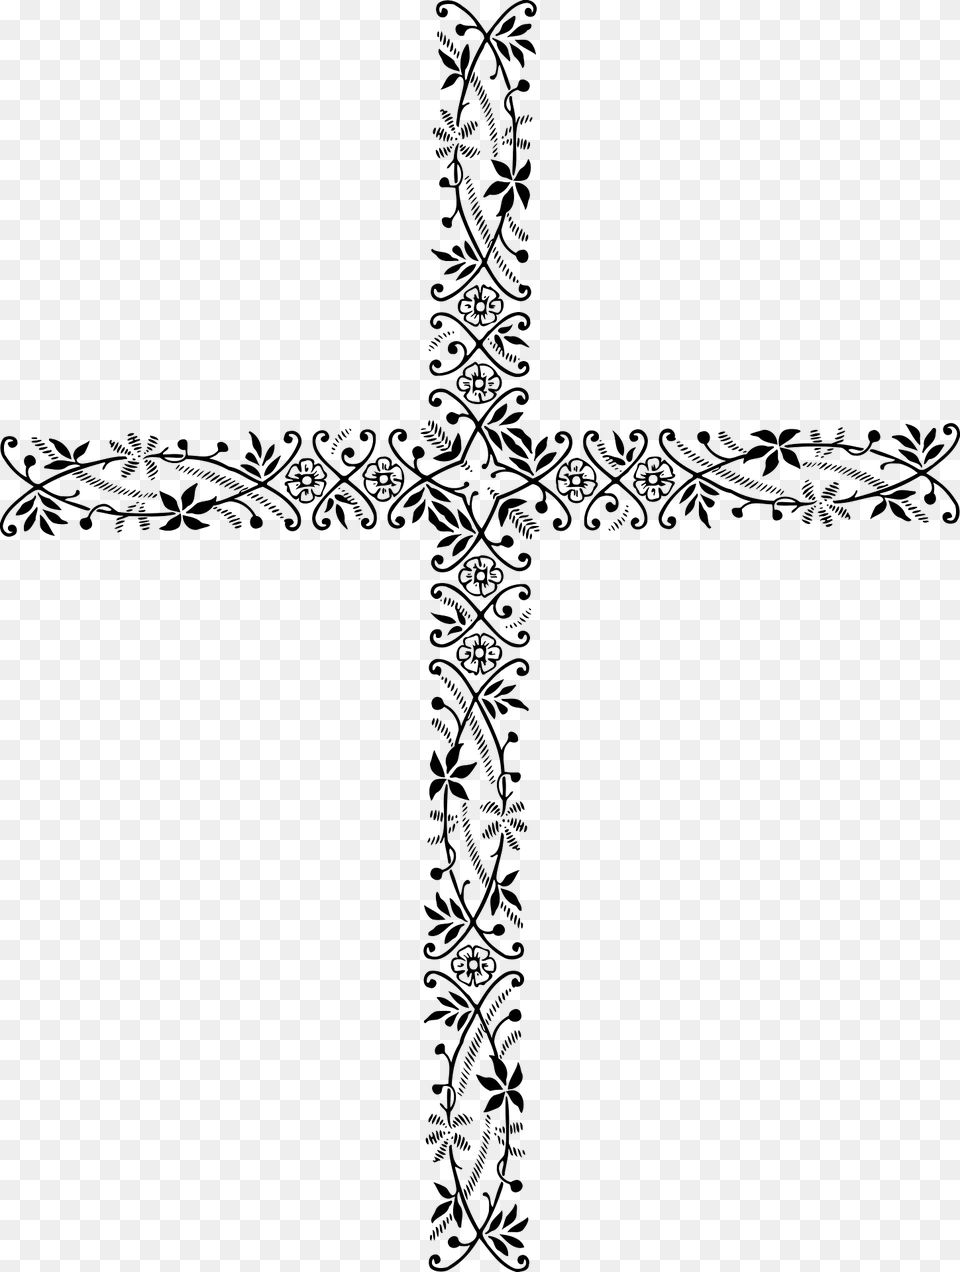 Ornamental Cross Clipart, Symbol, Green Free Transparent Png